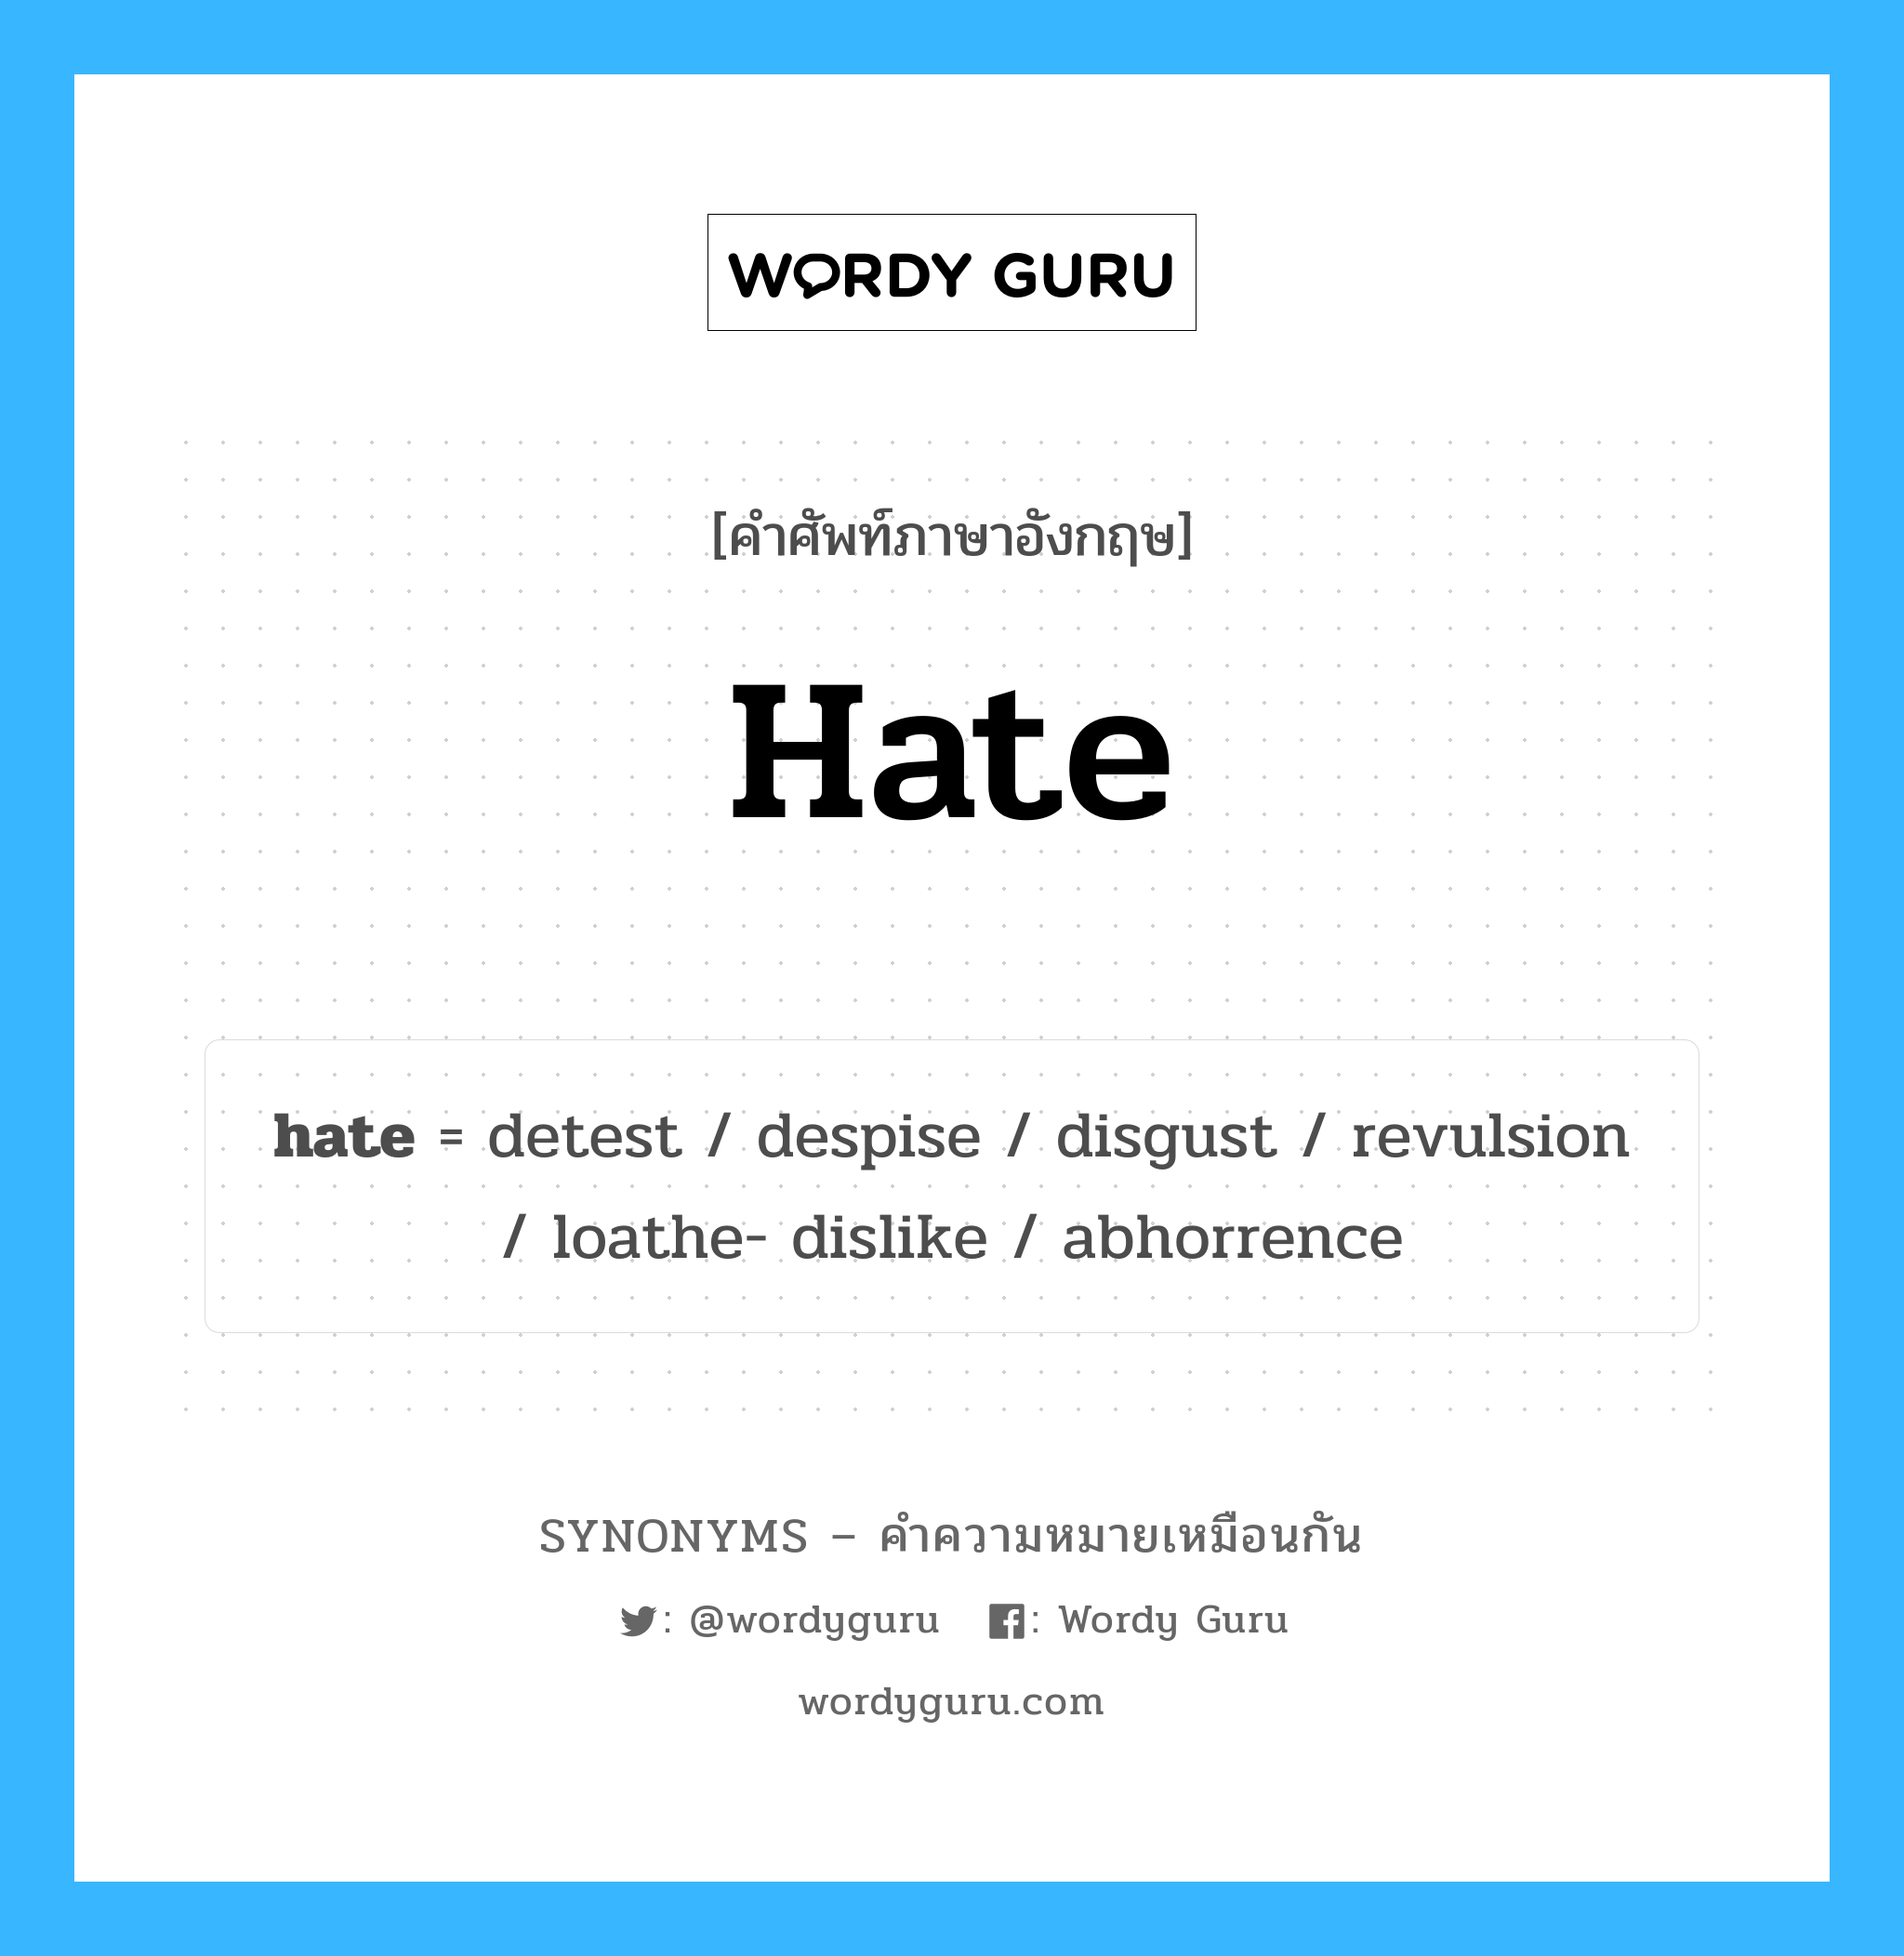 loathe- dislike เป็นหนึ่งใน hate และมีคำอื่น ๆ อีกดังนี้, คำศัพท์ภาษาอังกฤษ loathe- dislike ความหมายคล้ายกันกับ hate แปลว่า ไม่ชอบเกลียดชัง หมวด hate